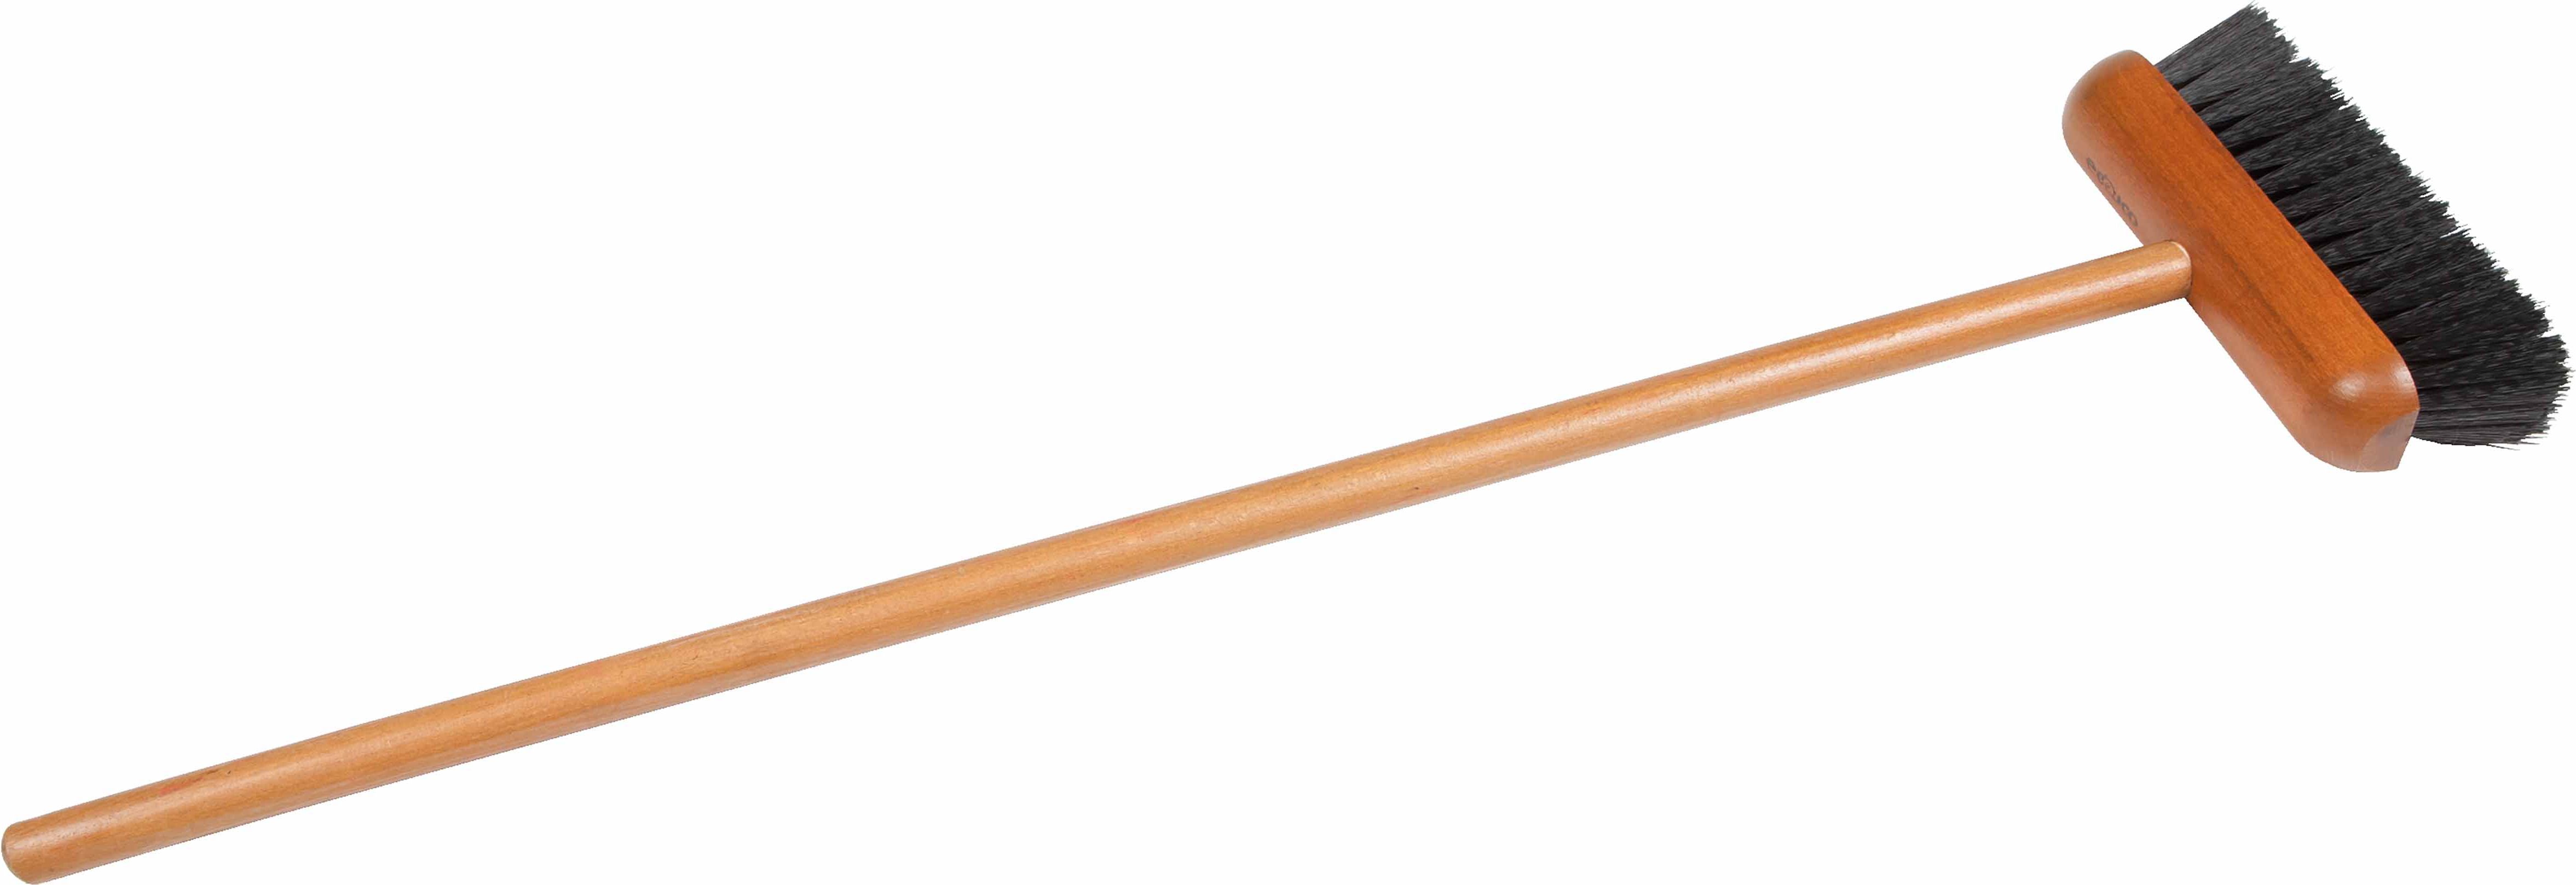 Educo E522062 Room broom (soft) - obrázek 1